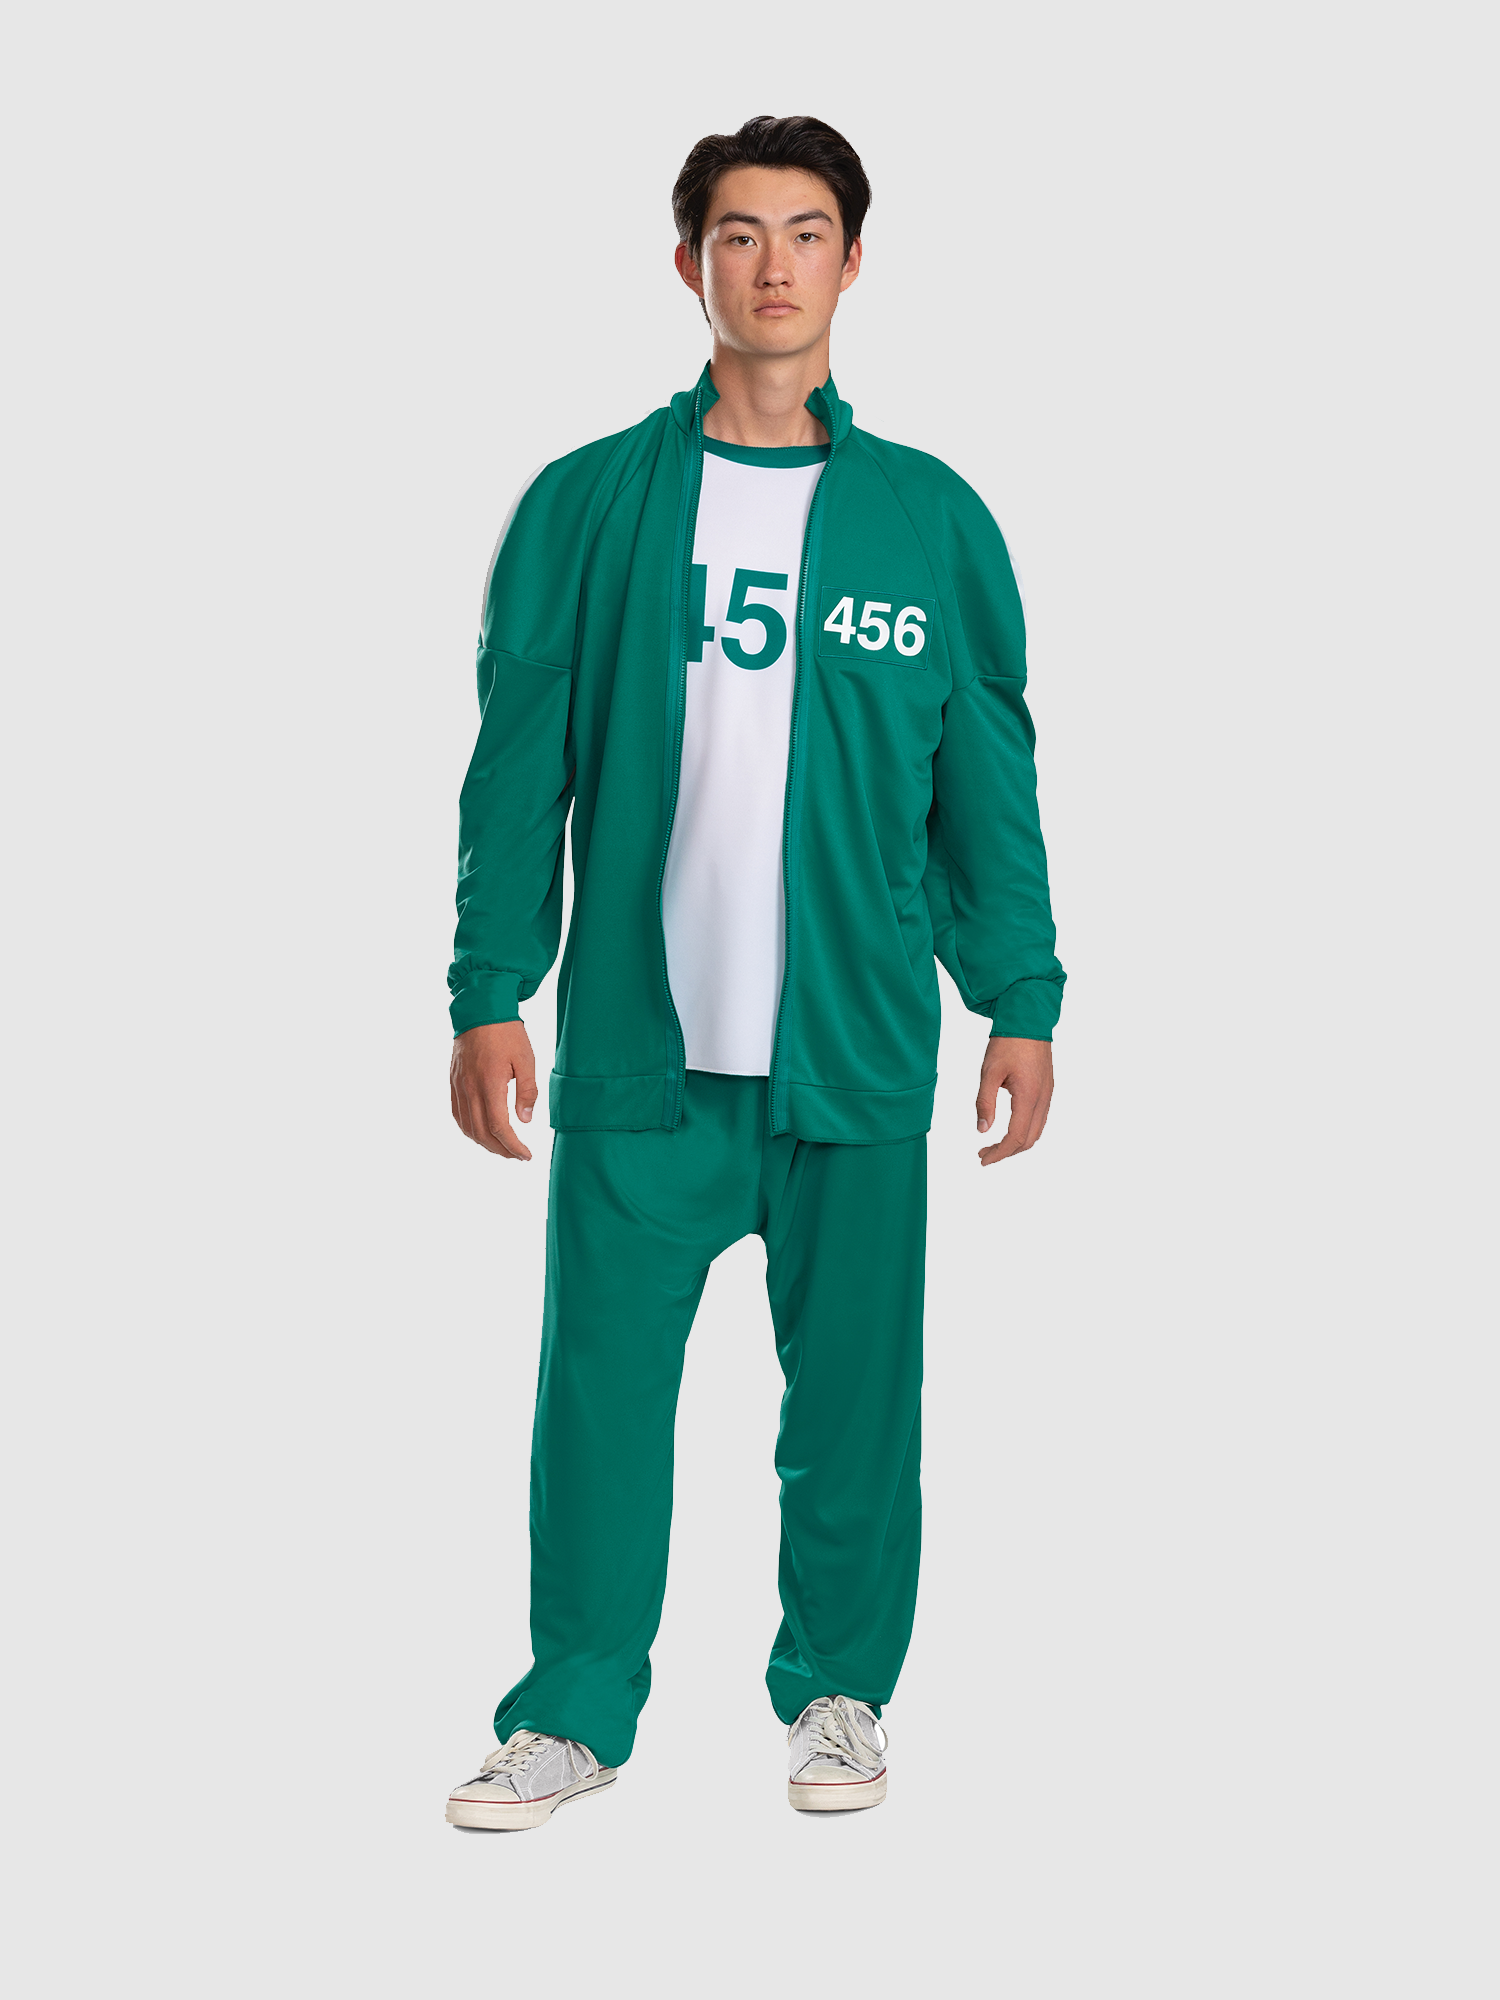 Netflix Squid Game Sweatshirt Green Player Number 456 - PKAWAY